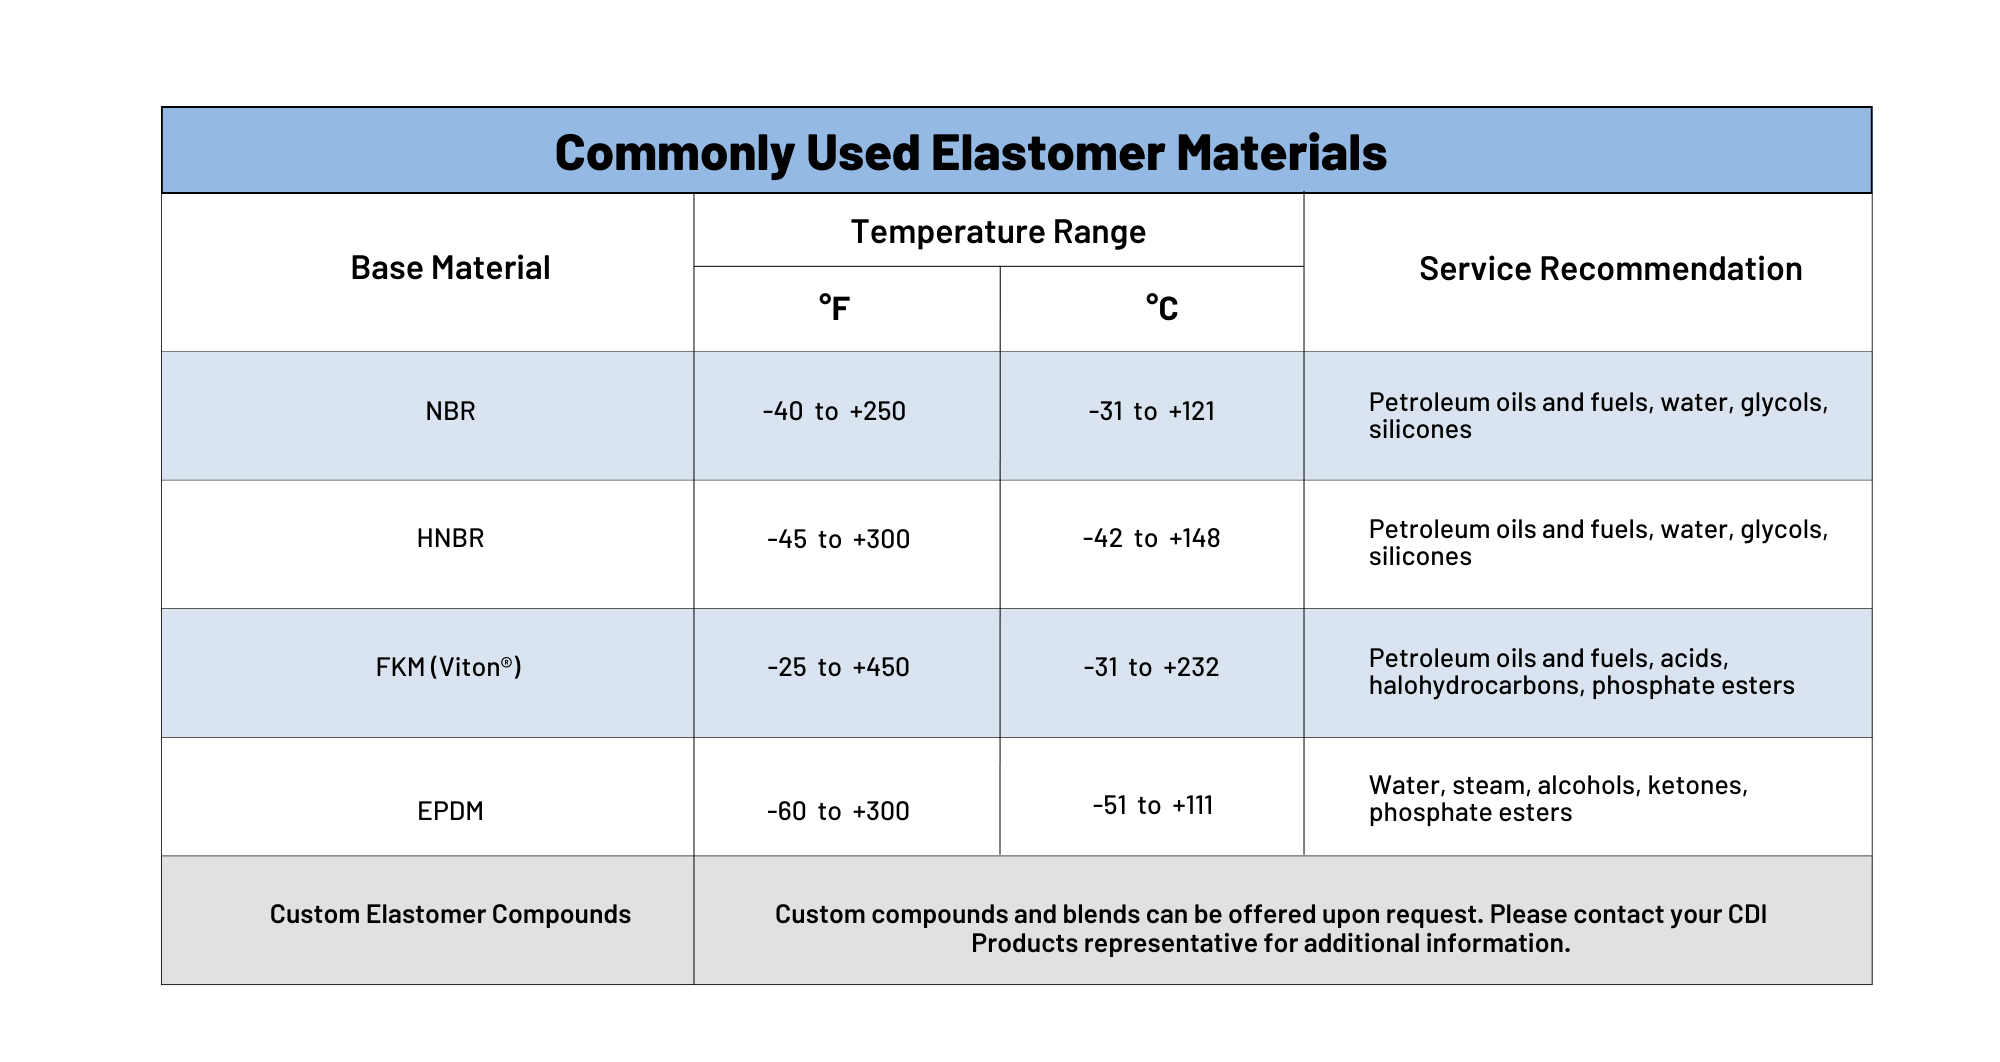 P-Seals Elastomer Materials